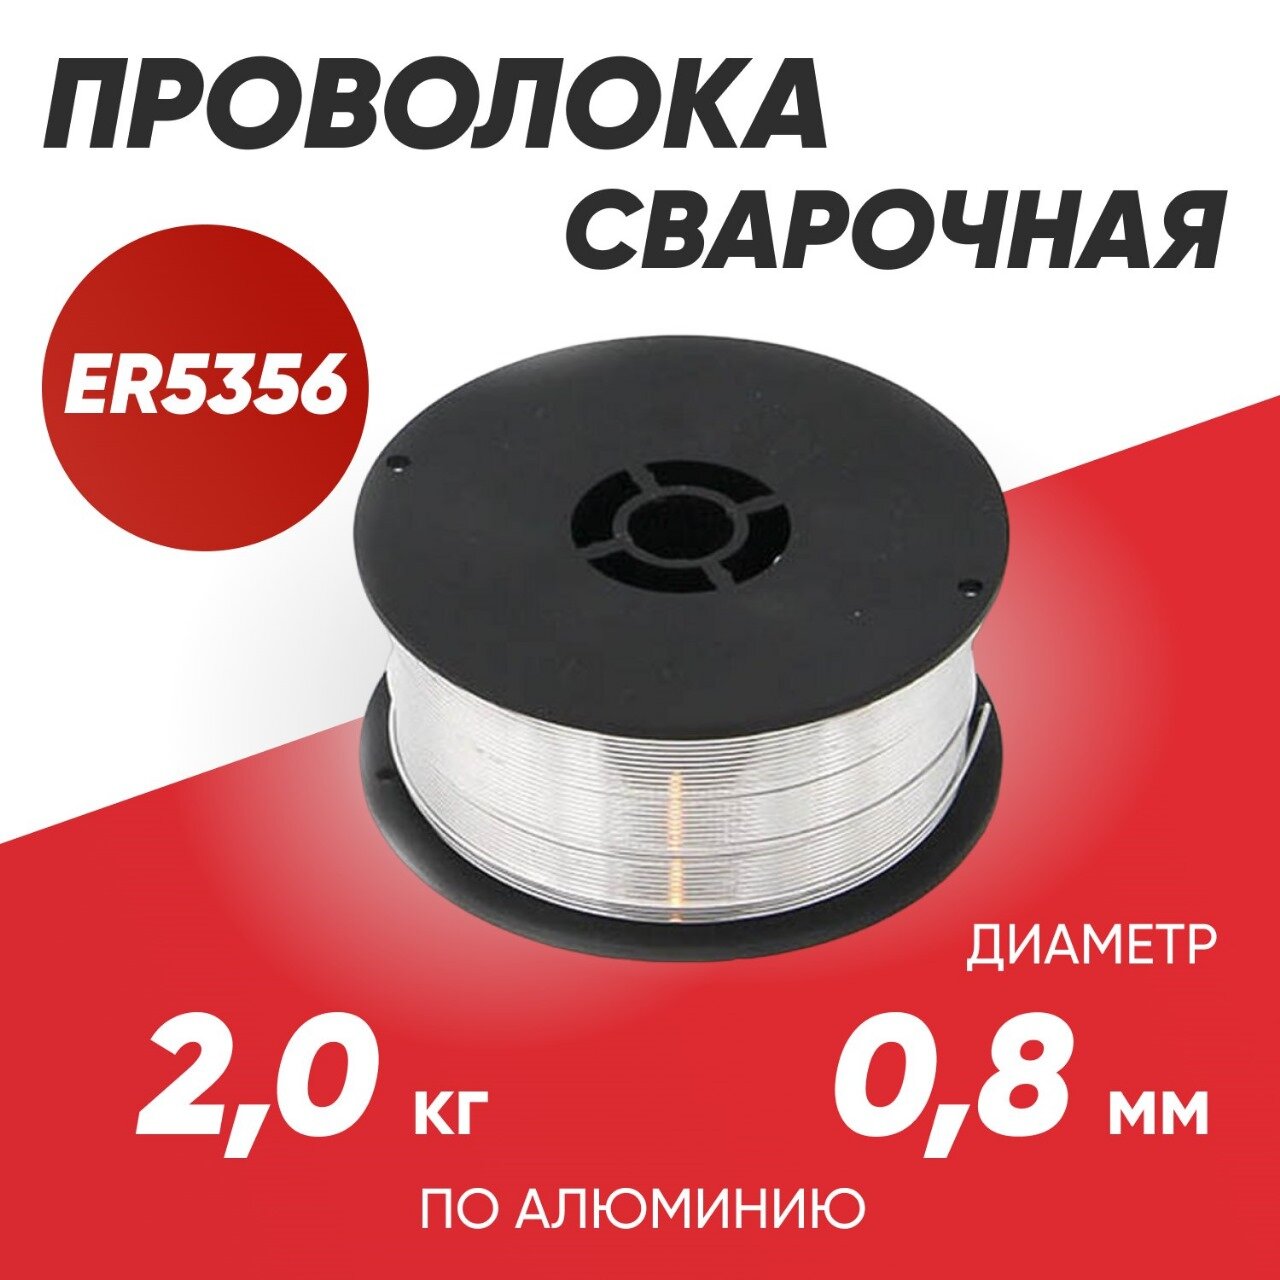 Проволока алюминиевая проволока сварочная DEKA ER5356 диаметр 0,8 мм в катушках по 2 кг